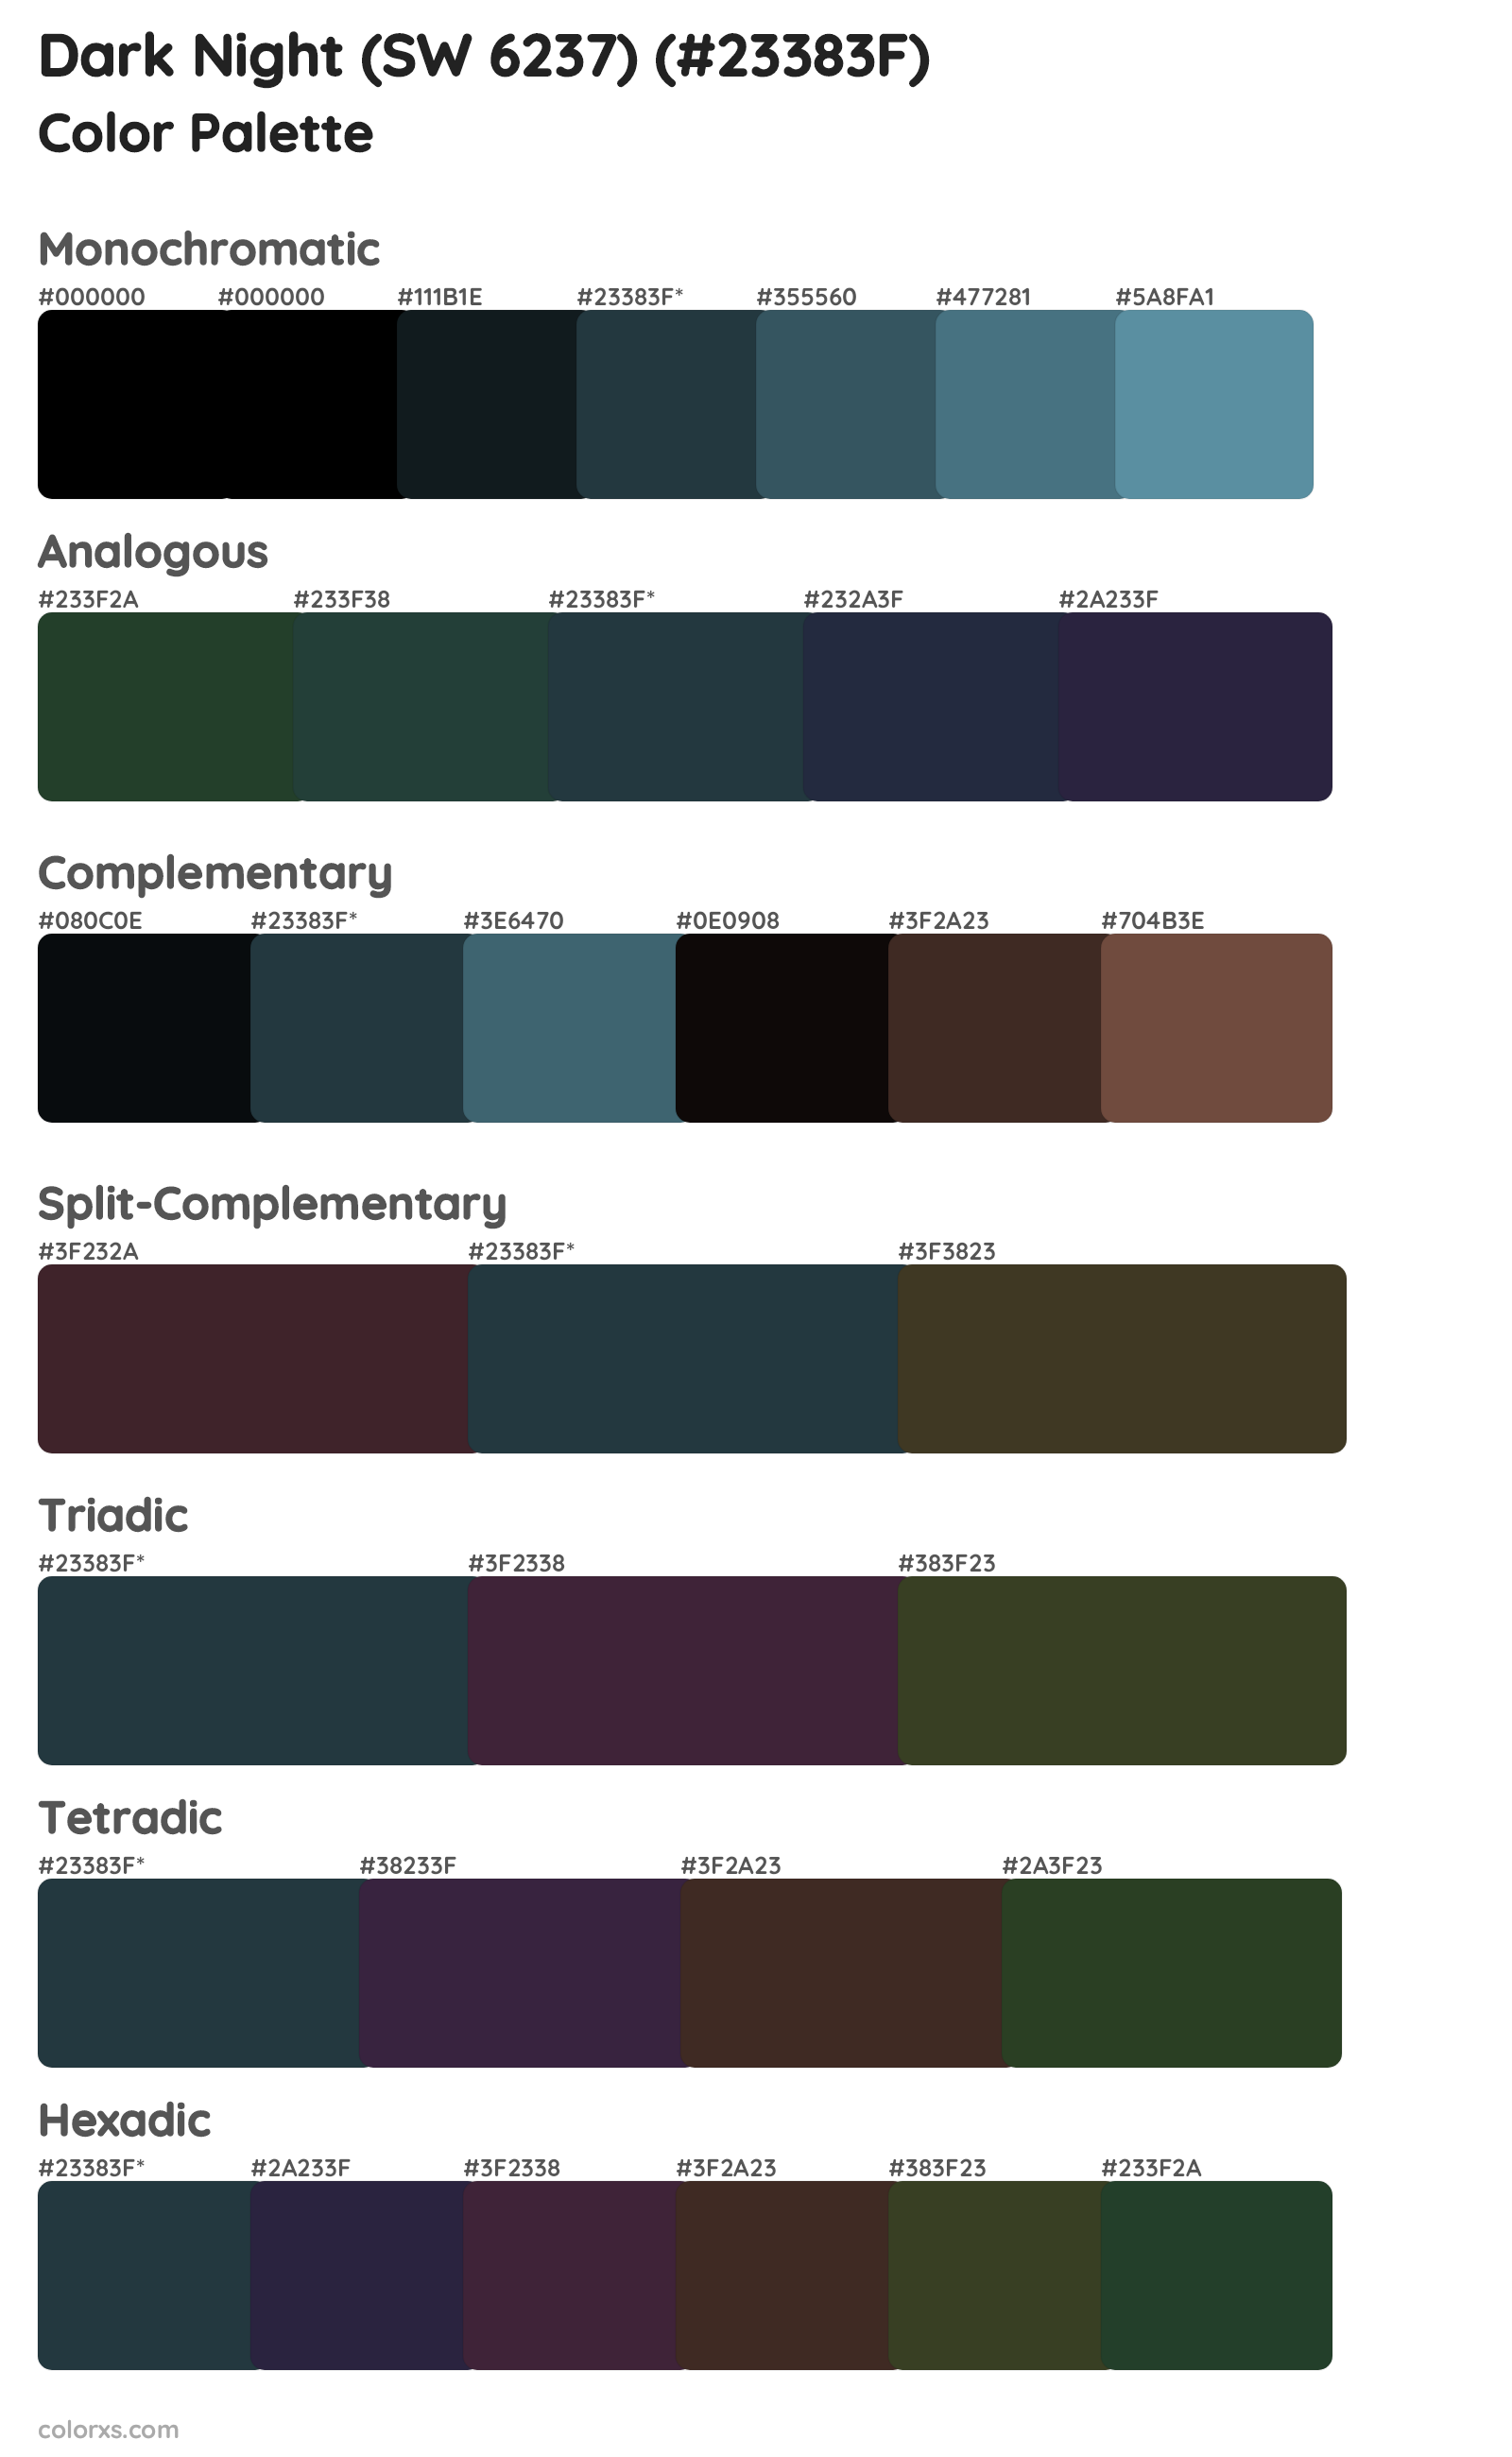 Dark Night (SW 6237) Color Scheme Palettes